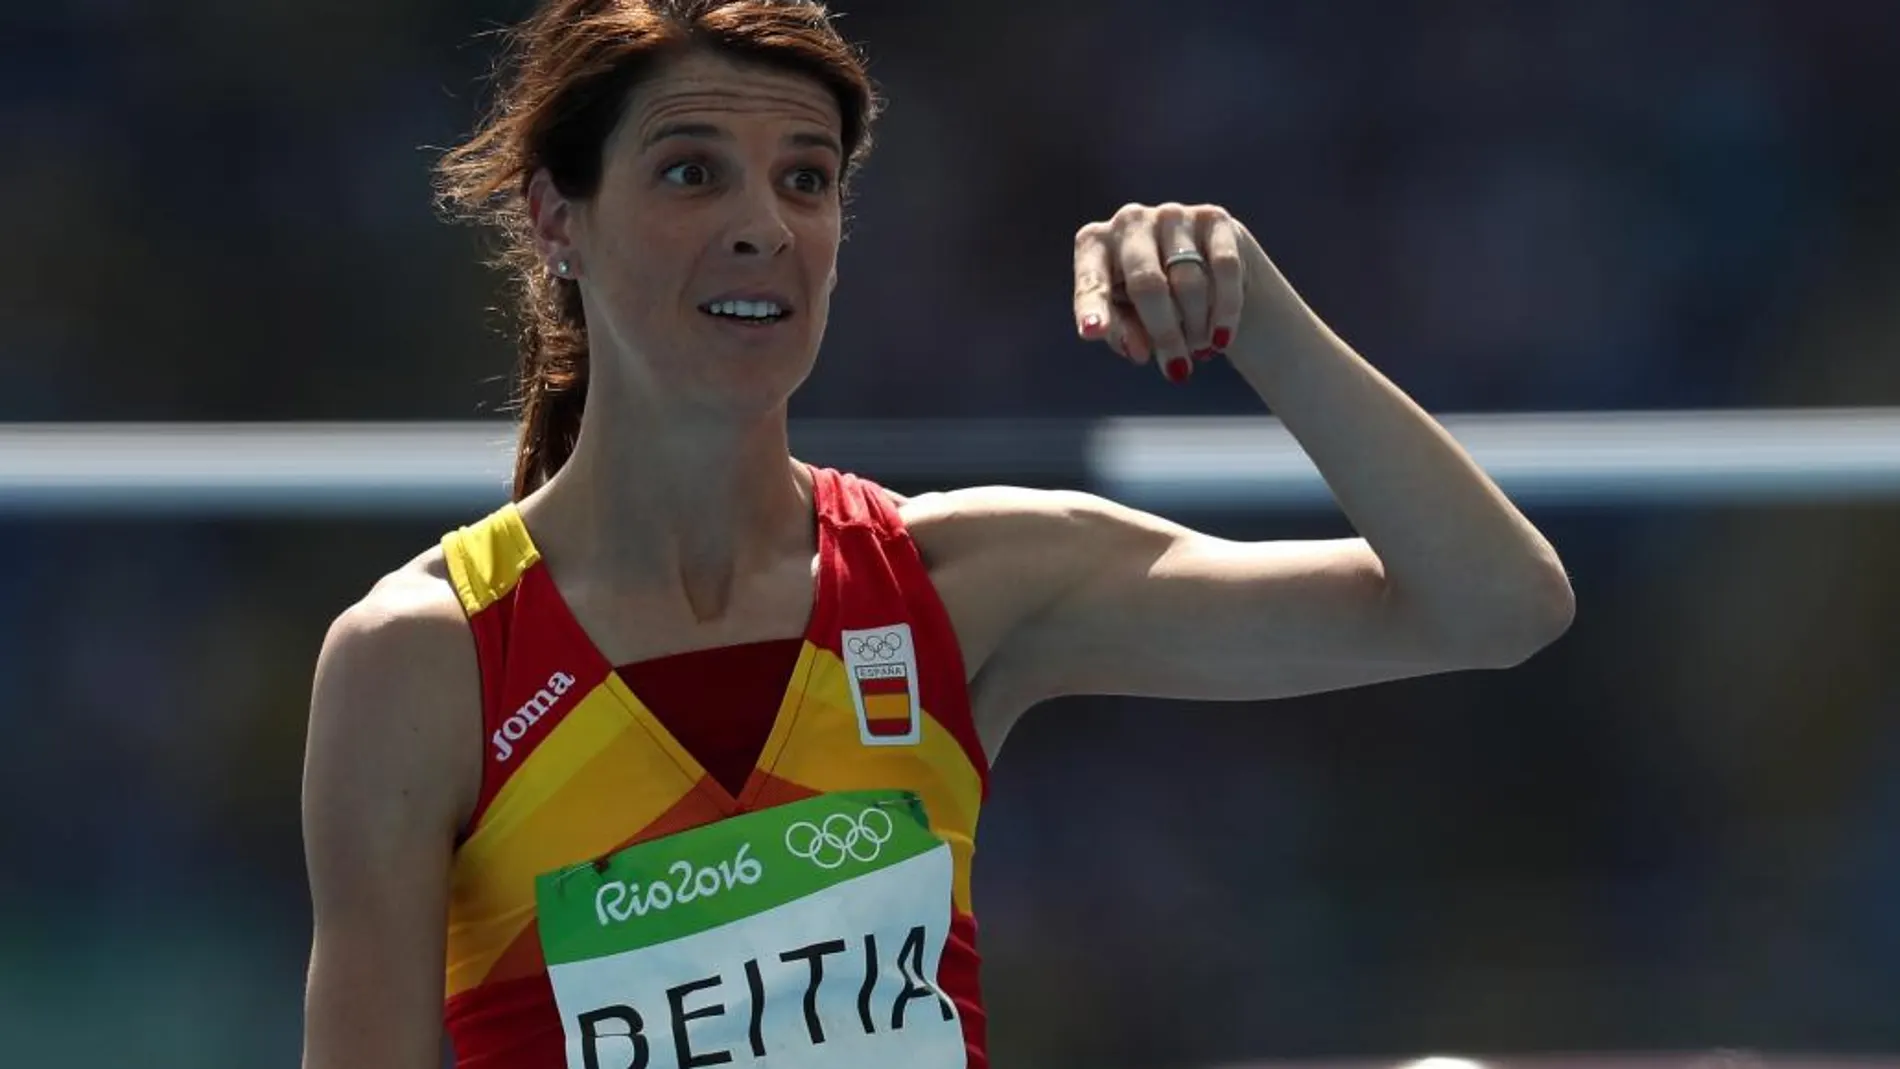 La saltadora española Ruth Beitia durante la preliminar de salto en altura de los Juegos Olímpicos Rio 2016